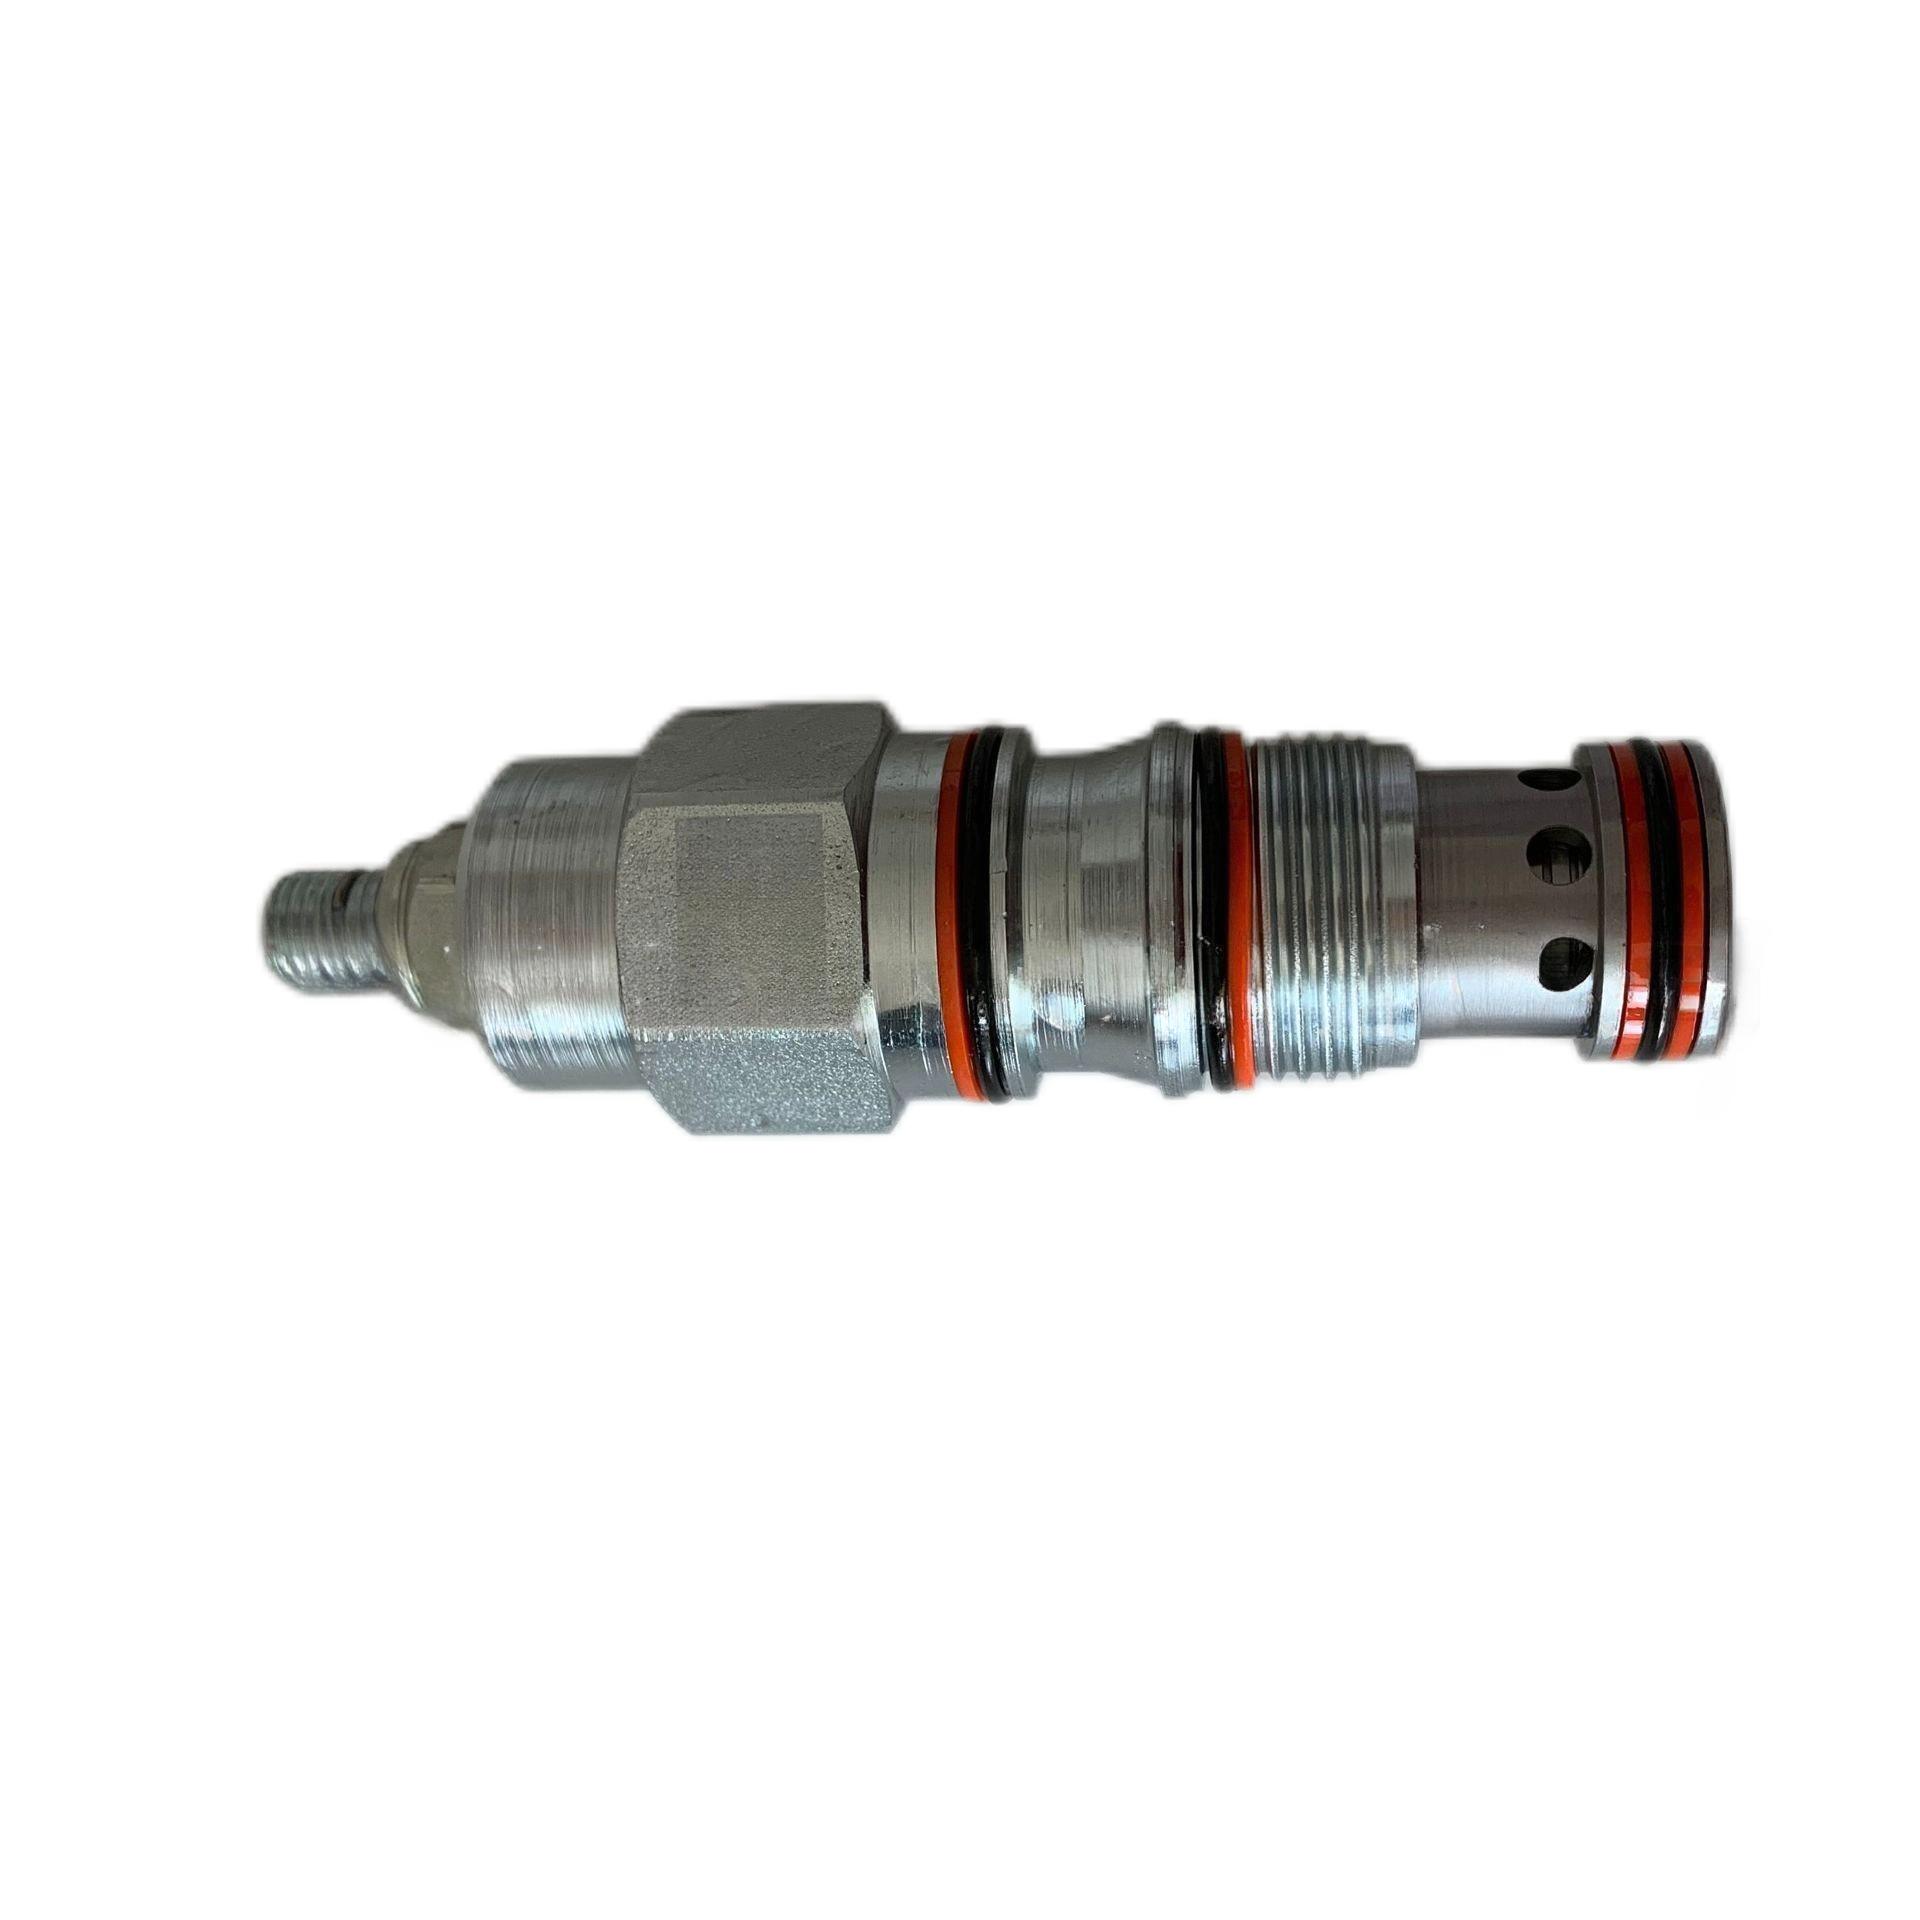 I-hydraulic balance valve Excavator i-hydraulic cylinder valve core RVEA-LAN